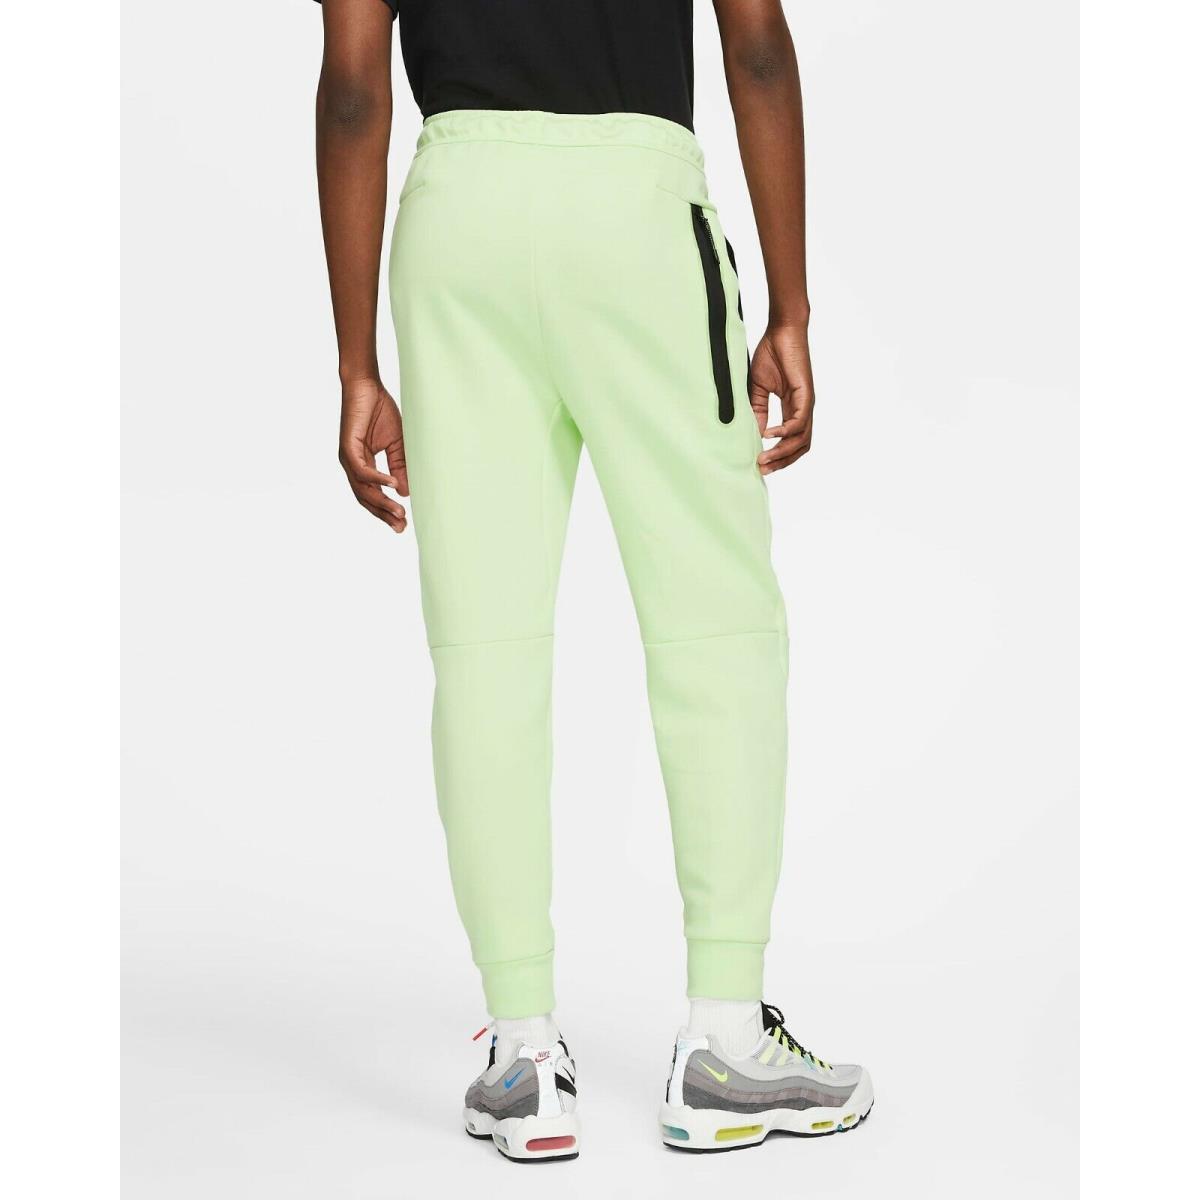 Nike clothing  - Lime Ice 0